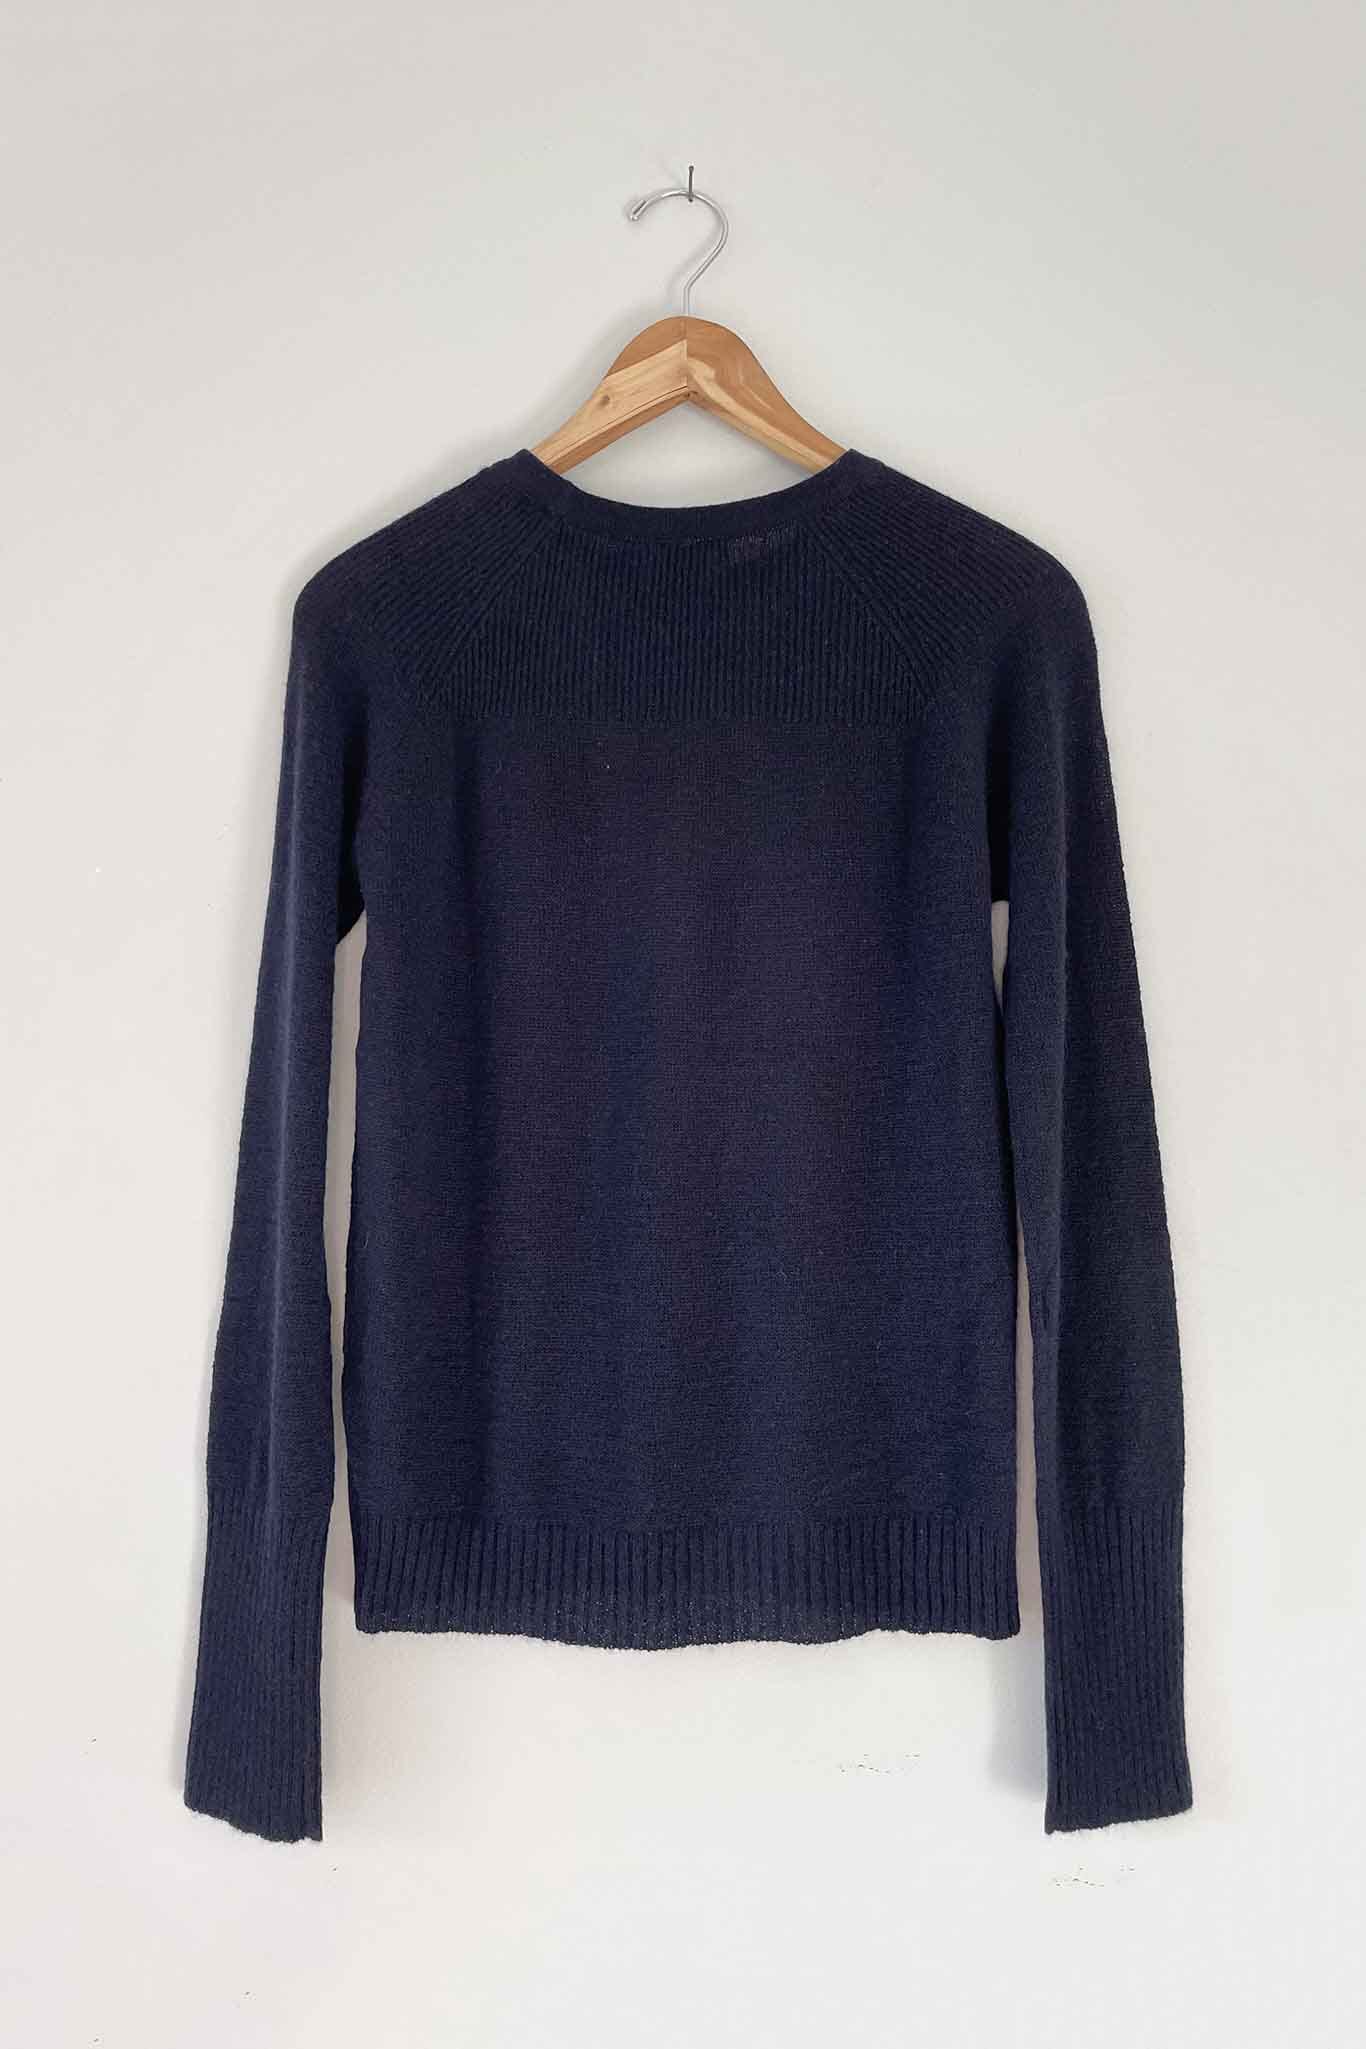 100% mongolian cashmere sweater. Lightweight summer sweater.